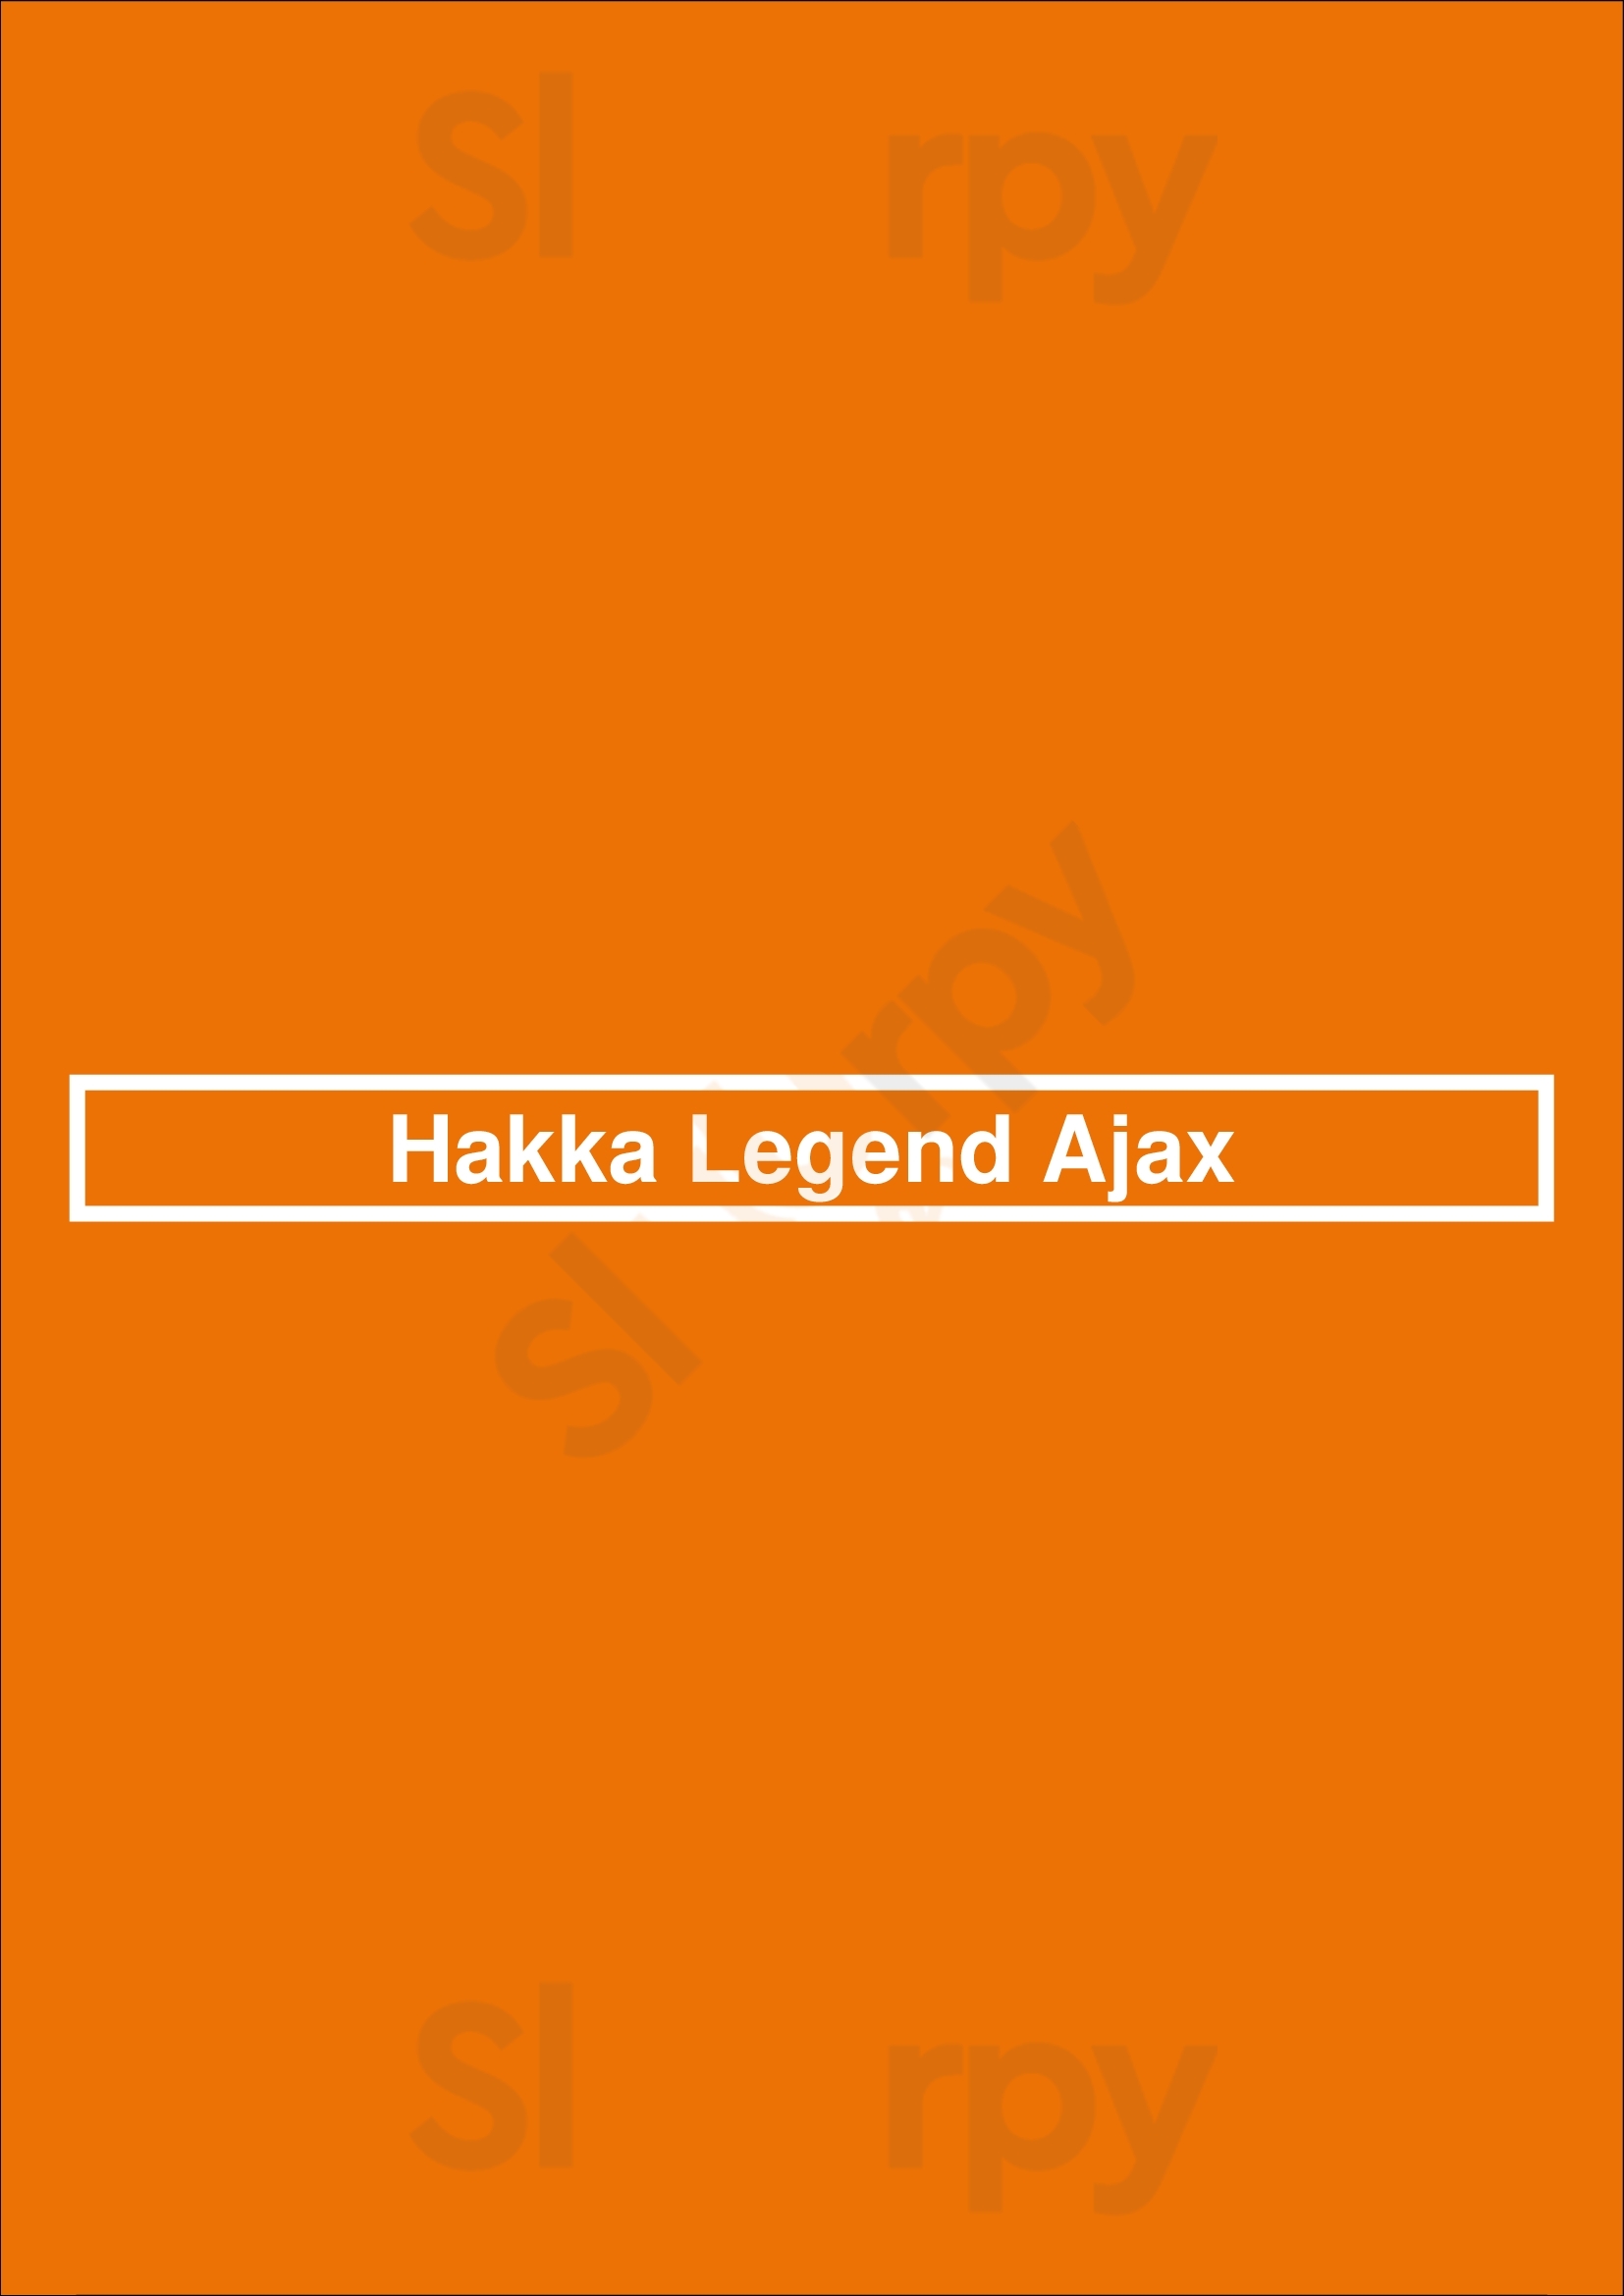 Hakka Legend Ajax Ajax Menu - 1